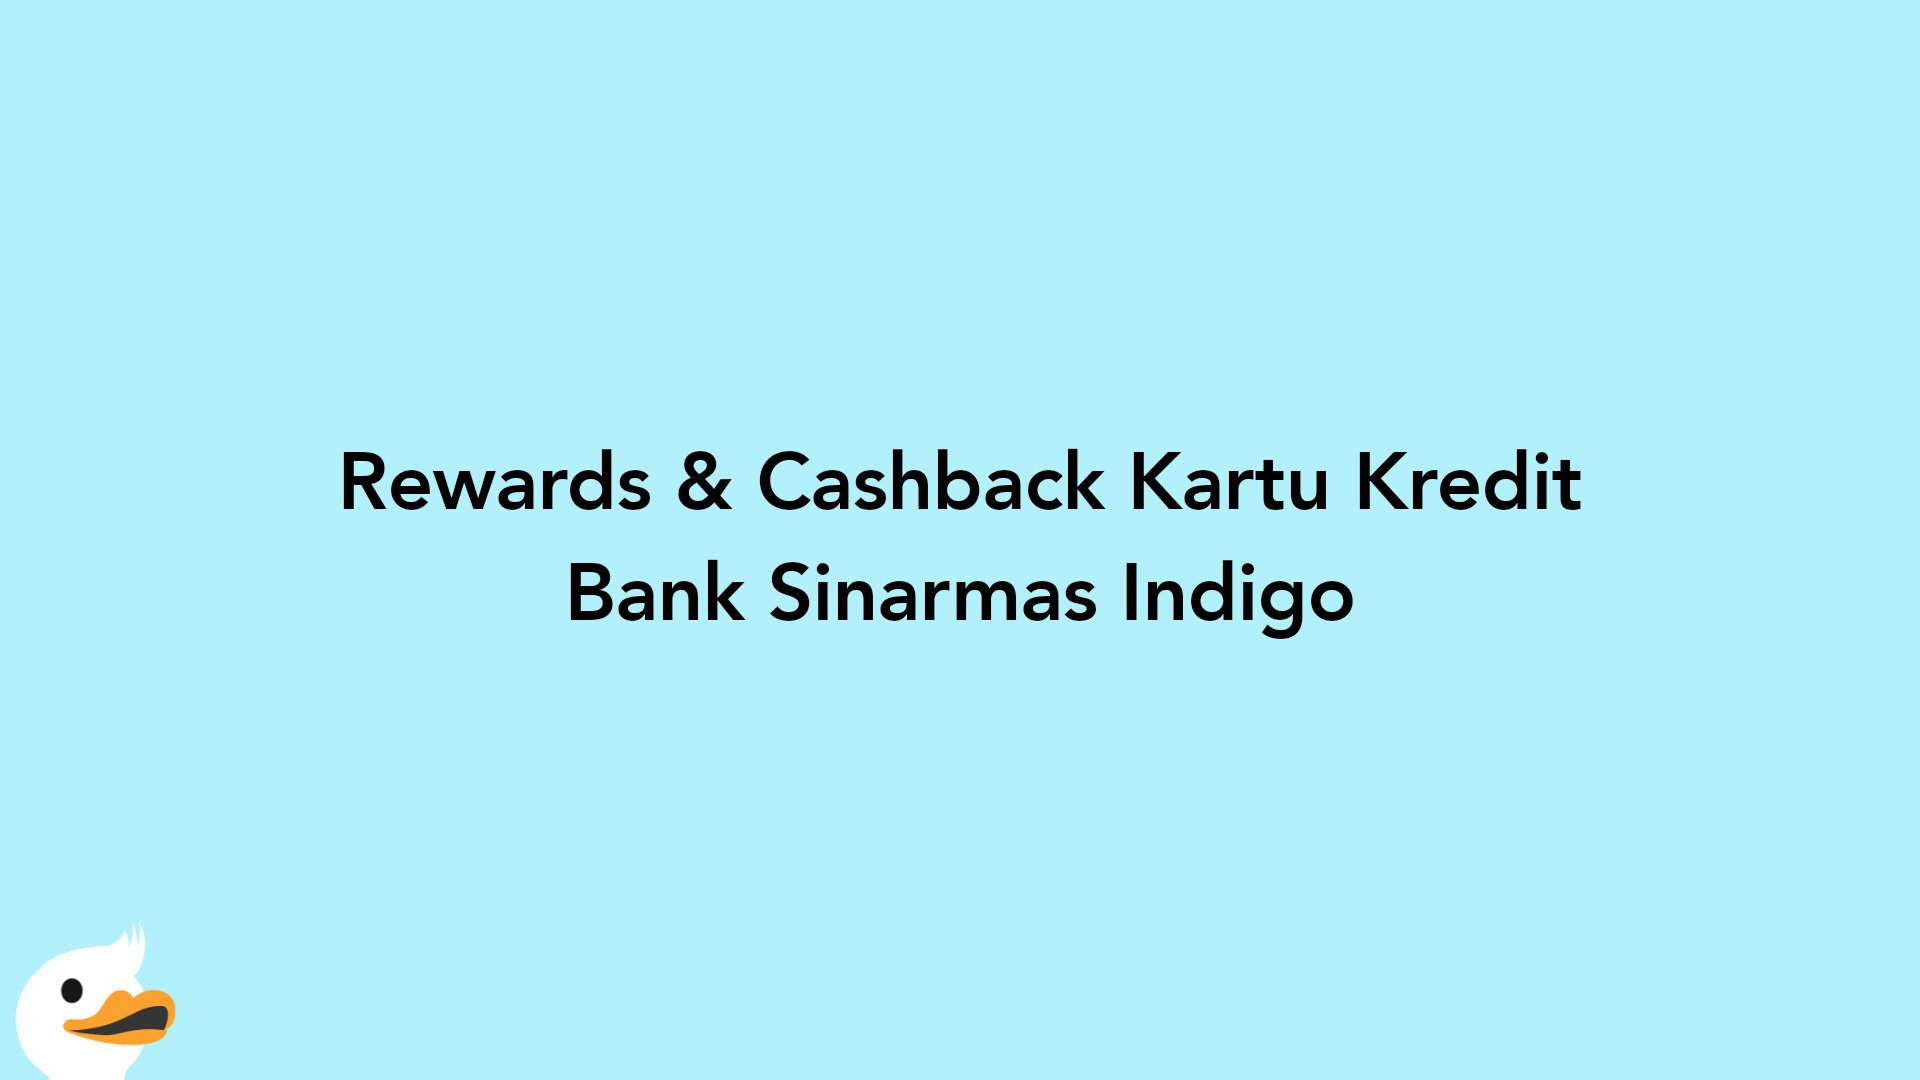 Rewards & Cashback Kartu Kredit Bank Sinarmas Indigo